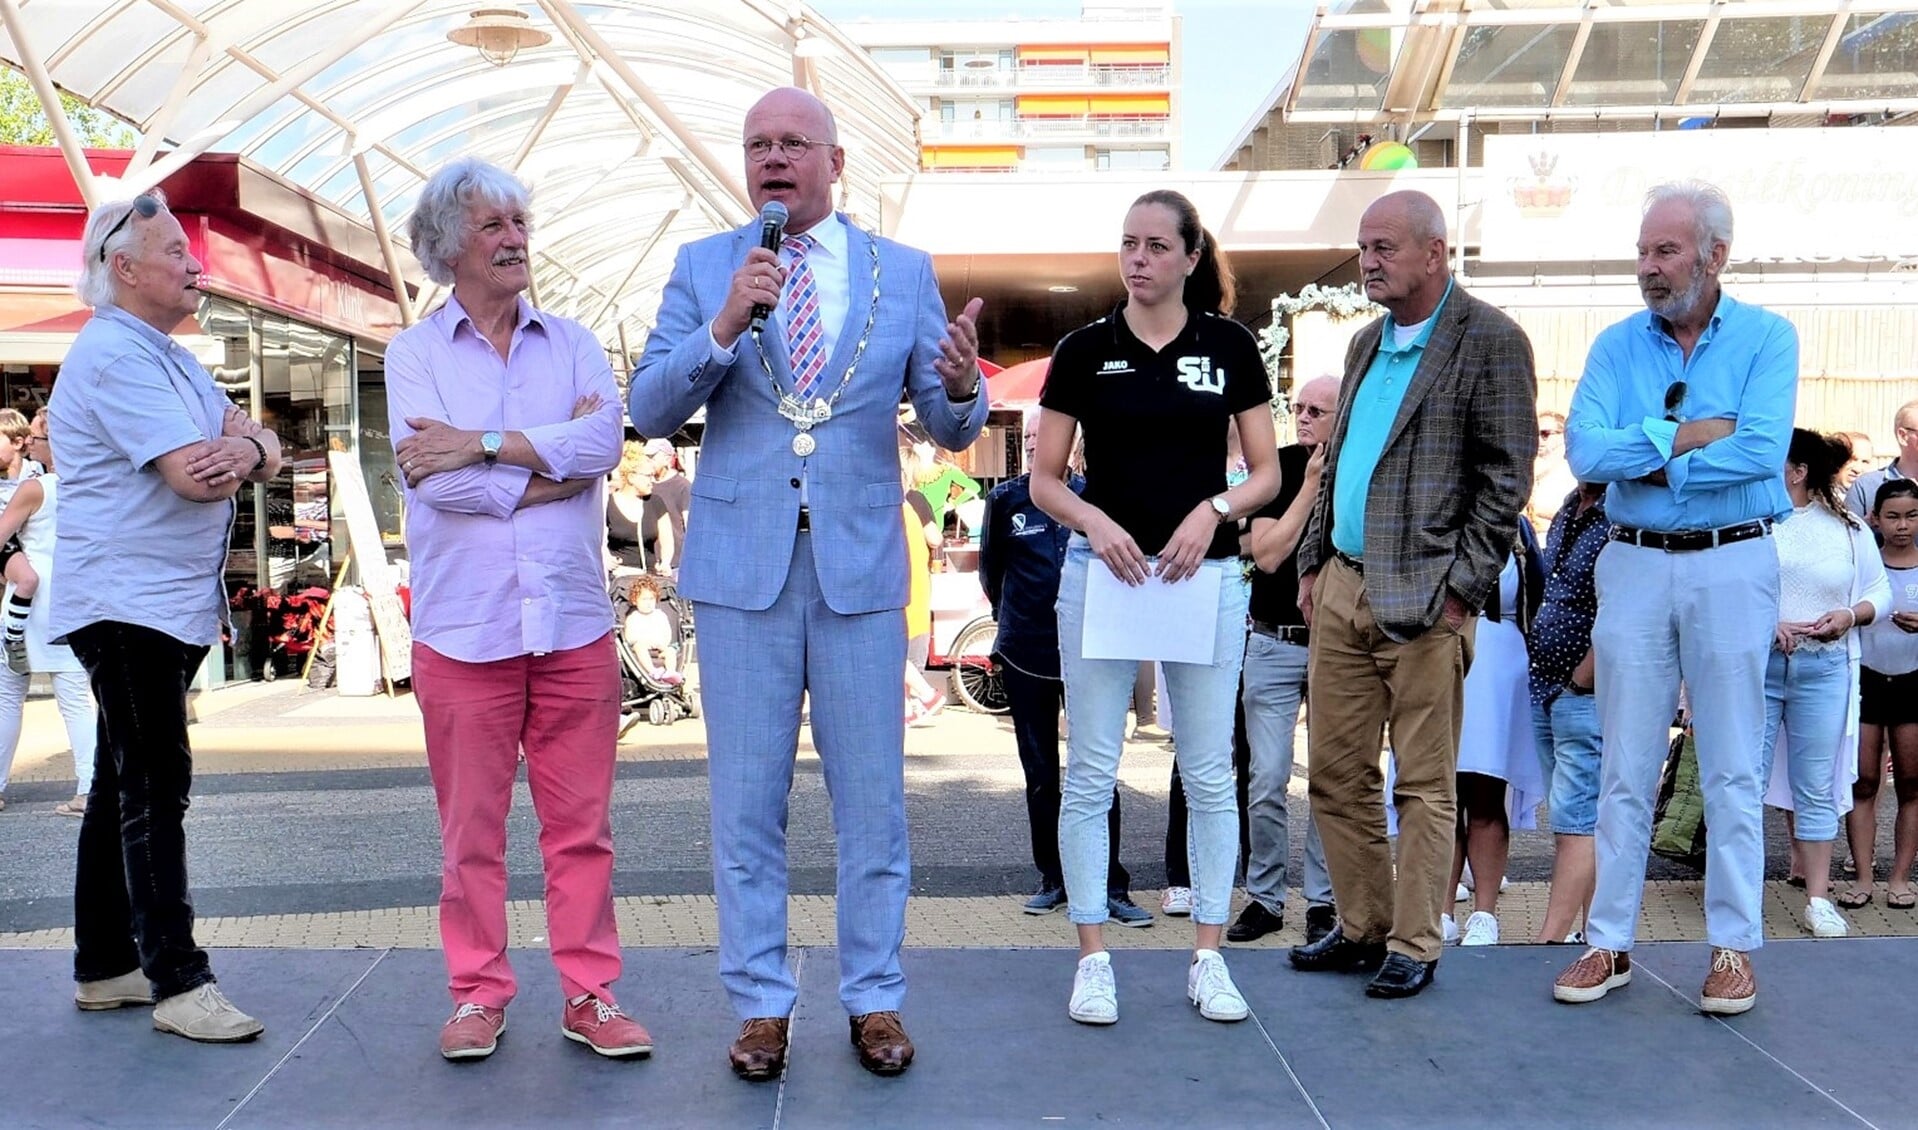 Burgemeester Klaas Tigelaar, ondermeer gelfankeerd door de organisatoren Ab Smit en Bert Winter  (l.) van het Cultureel Zomerfestival en andere betrokkenen (foto: Ot Douwes).